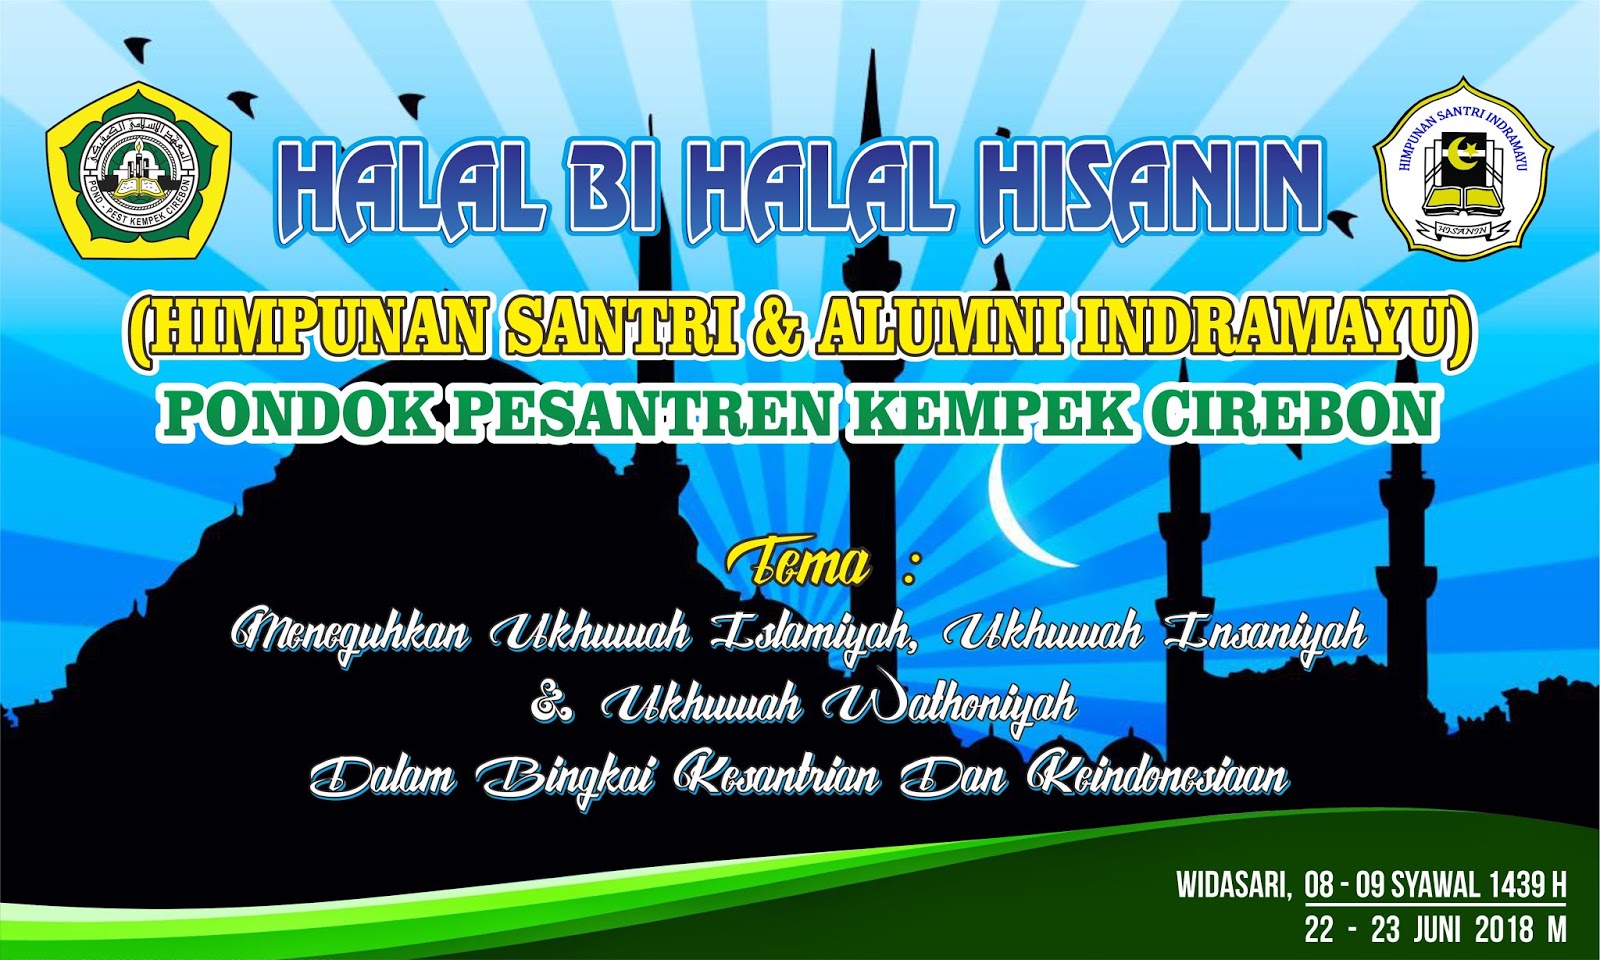 Contoh Desain Banner Spanduk Halal Bihalal Cdr Bannerspanduk